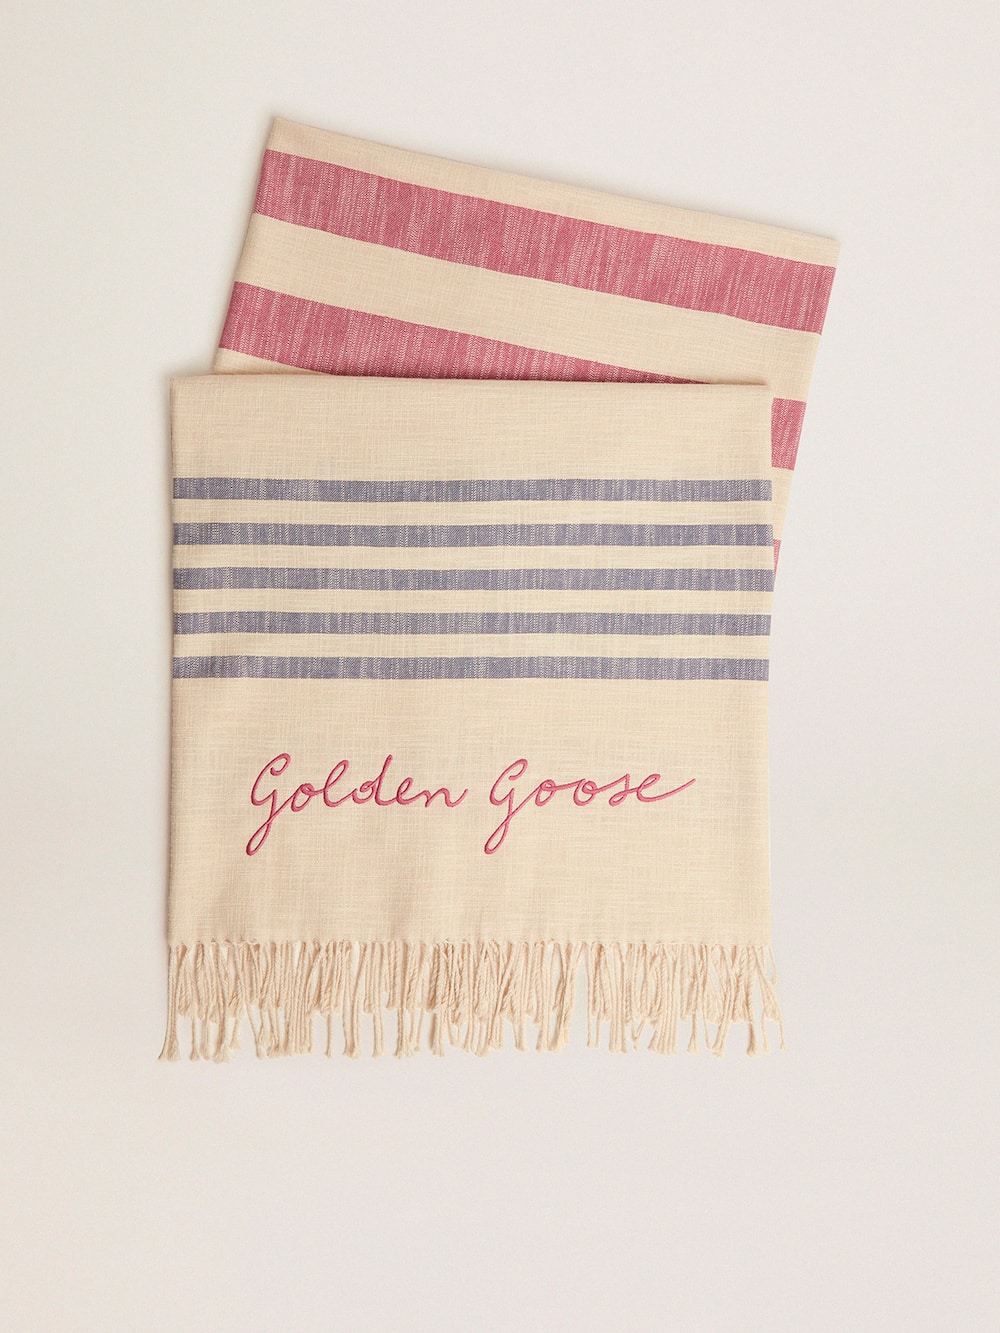 Golden Goose - Strandtuch Egeo aus der Golden Resort Capsule Collection in Vintage-Weiß aus Baumwolle mit blauen und roten Streifen und Zopffransen an den Enden in 